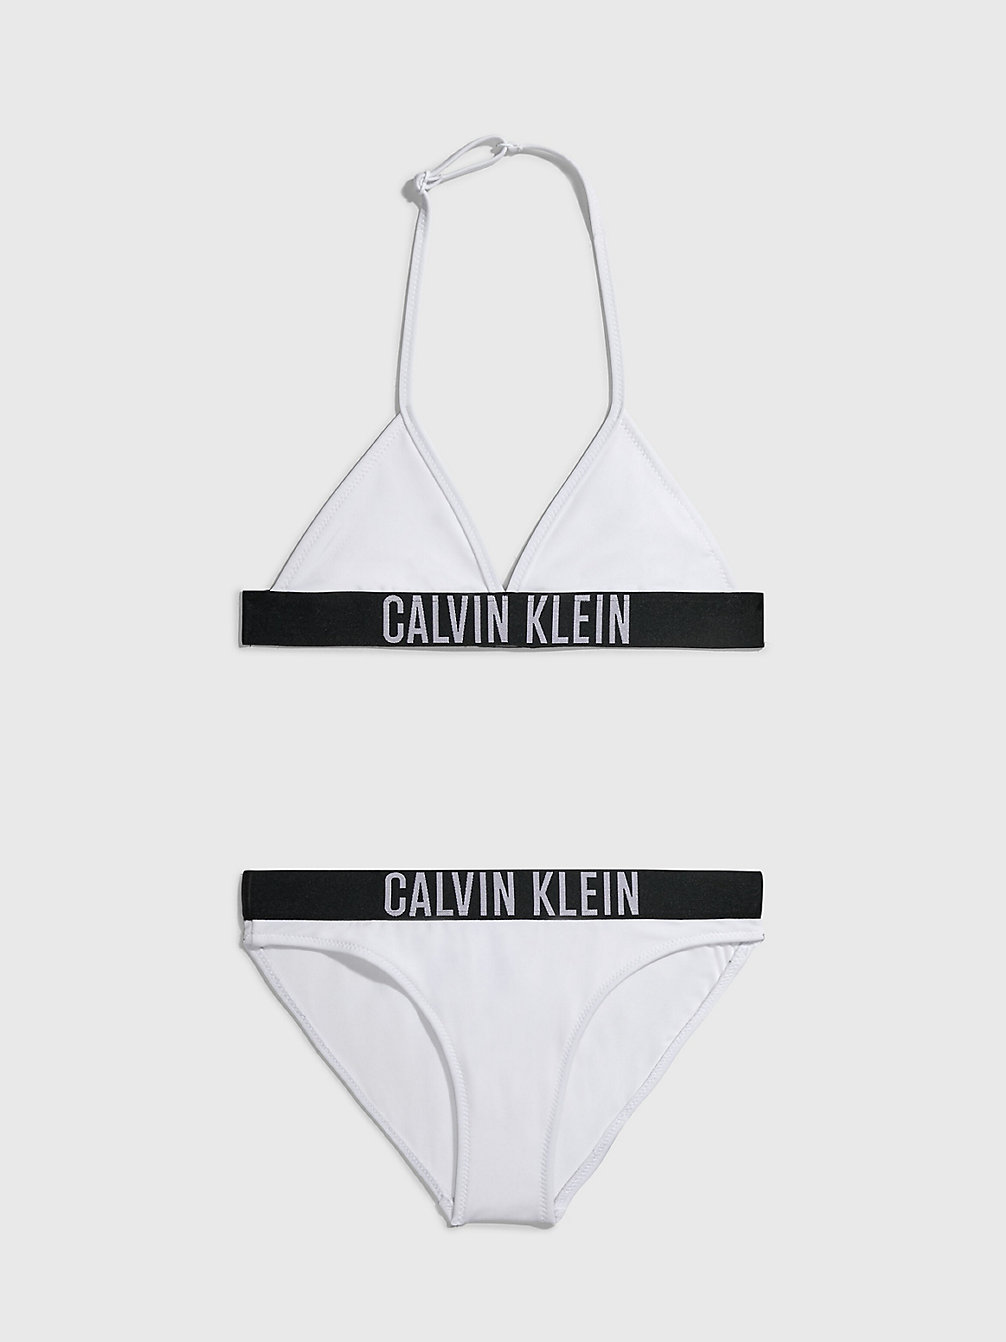 PVH CLASSIC WHITE > Triangel-Bikini-Set Für Mädchen - Intense Power > undefined Maedchen - Calvin Klein